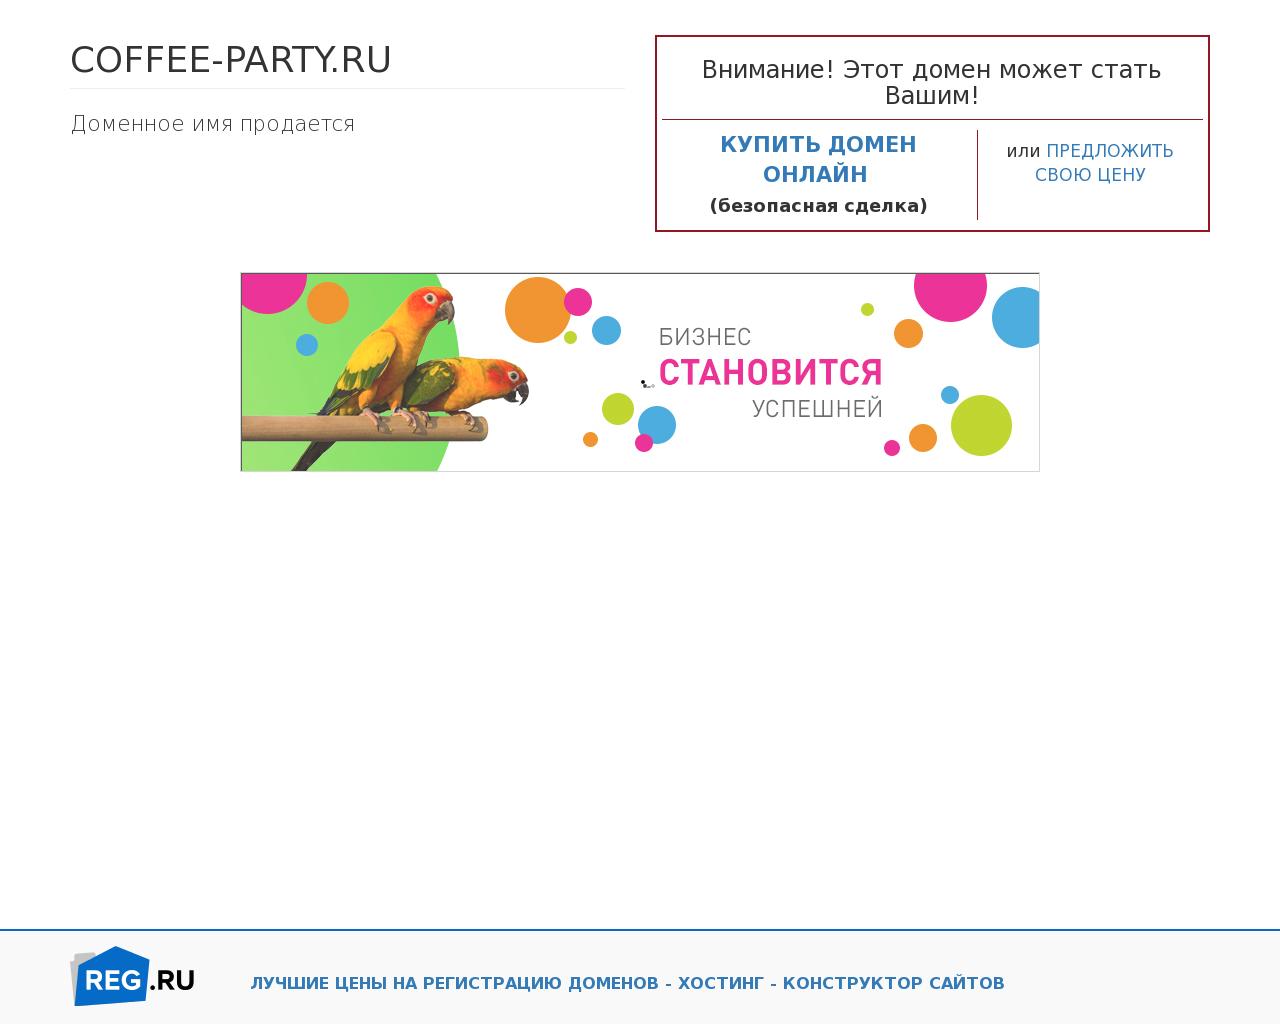 Изображение сайта coffee-party.ru в разрешении 1280x1024